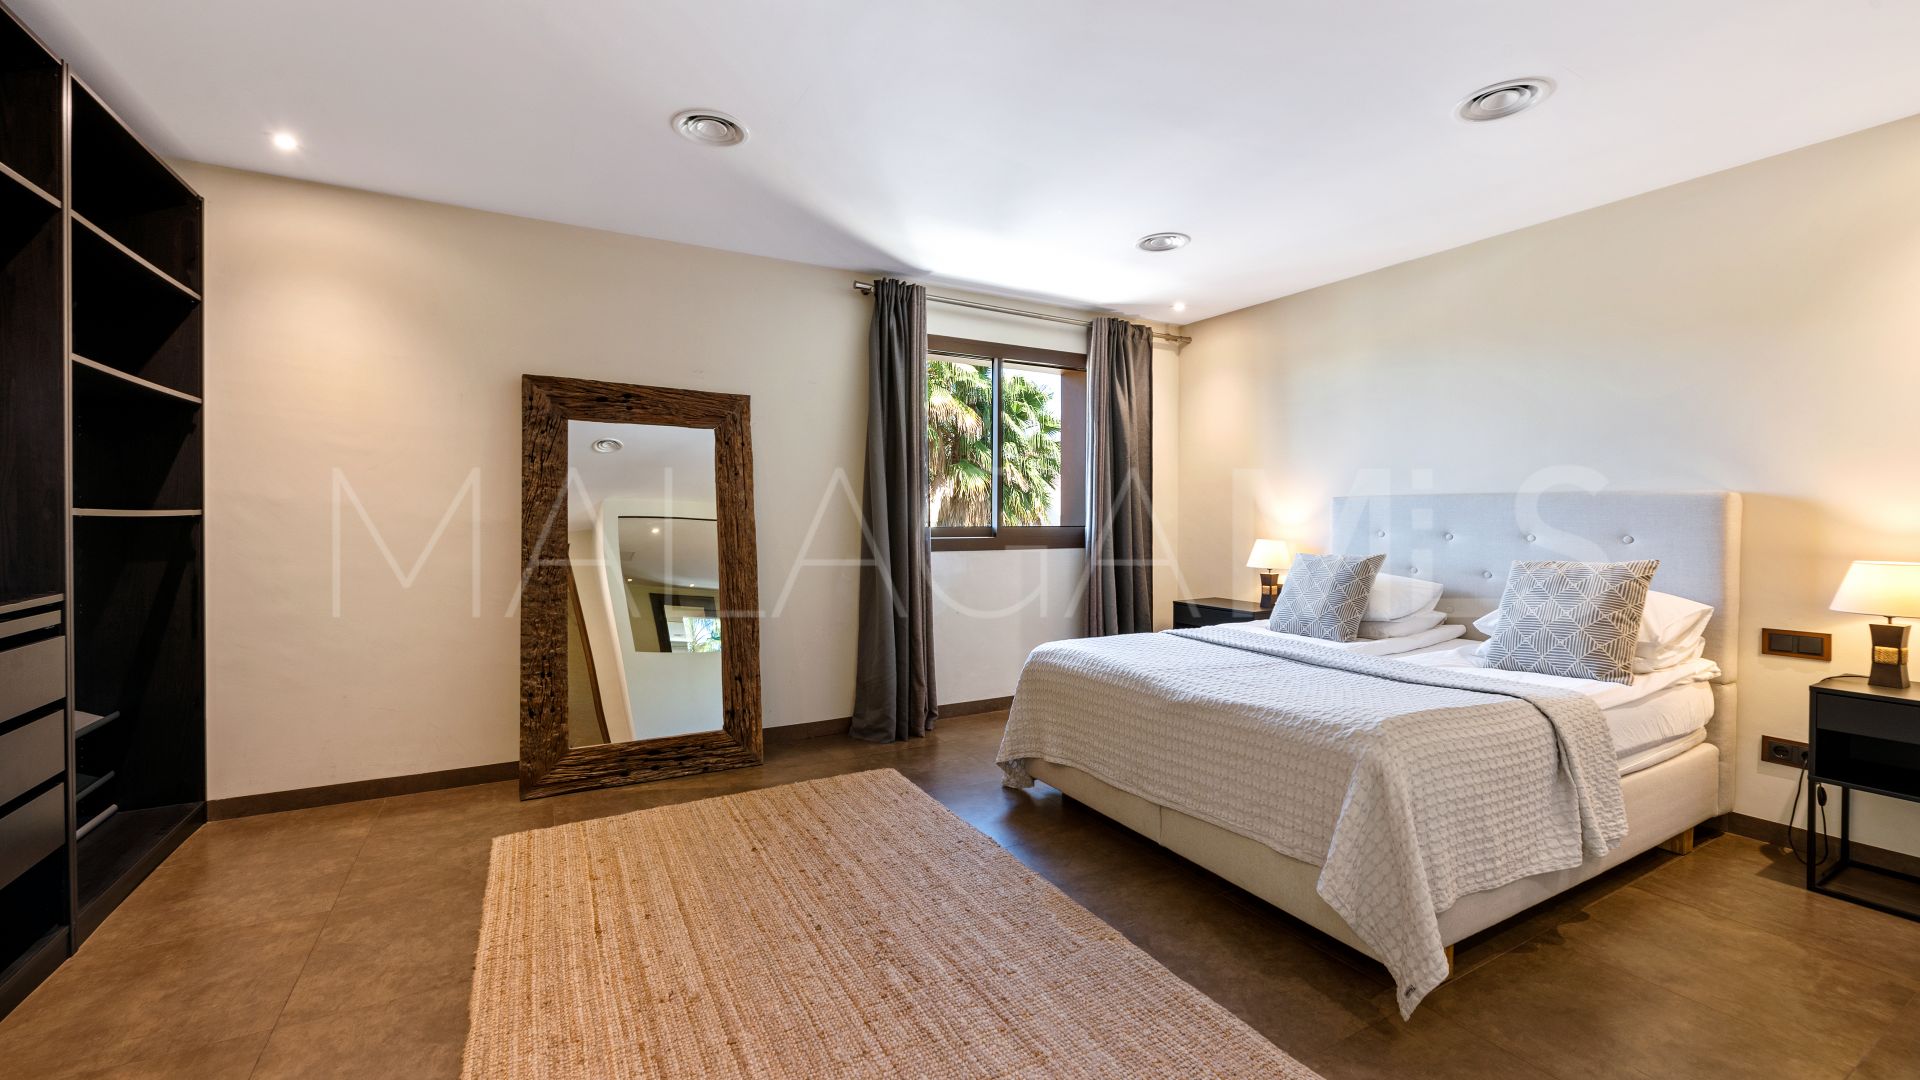 For sale La Alqueria villa with 8 bedrooms